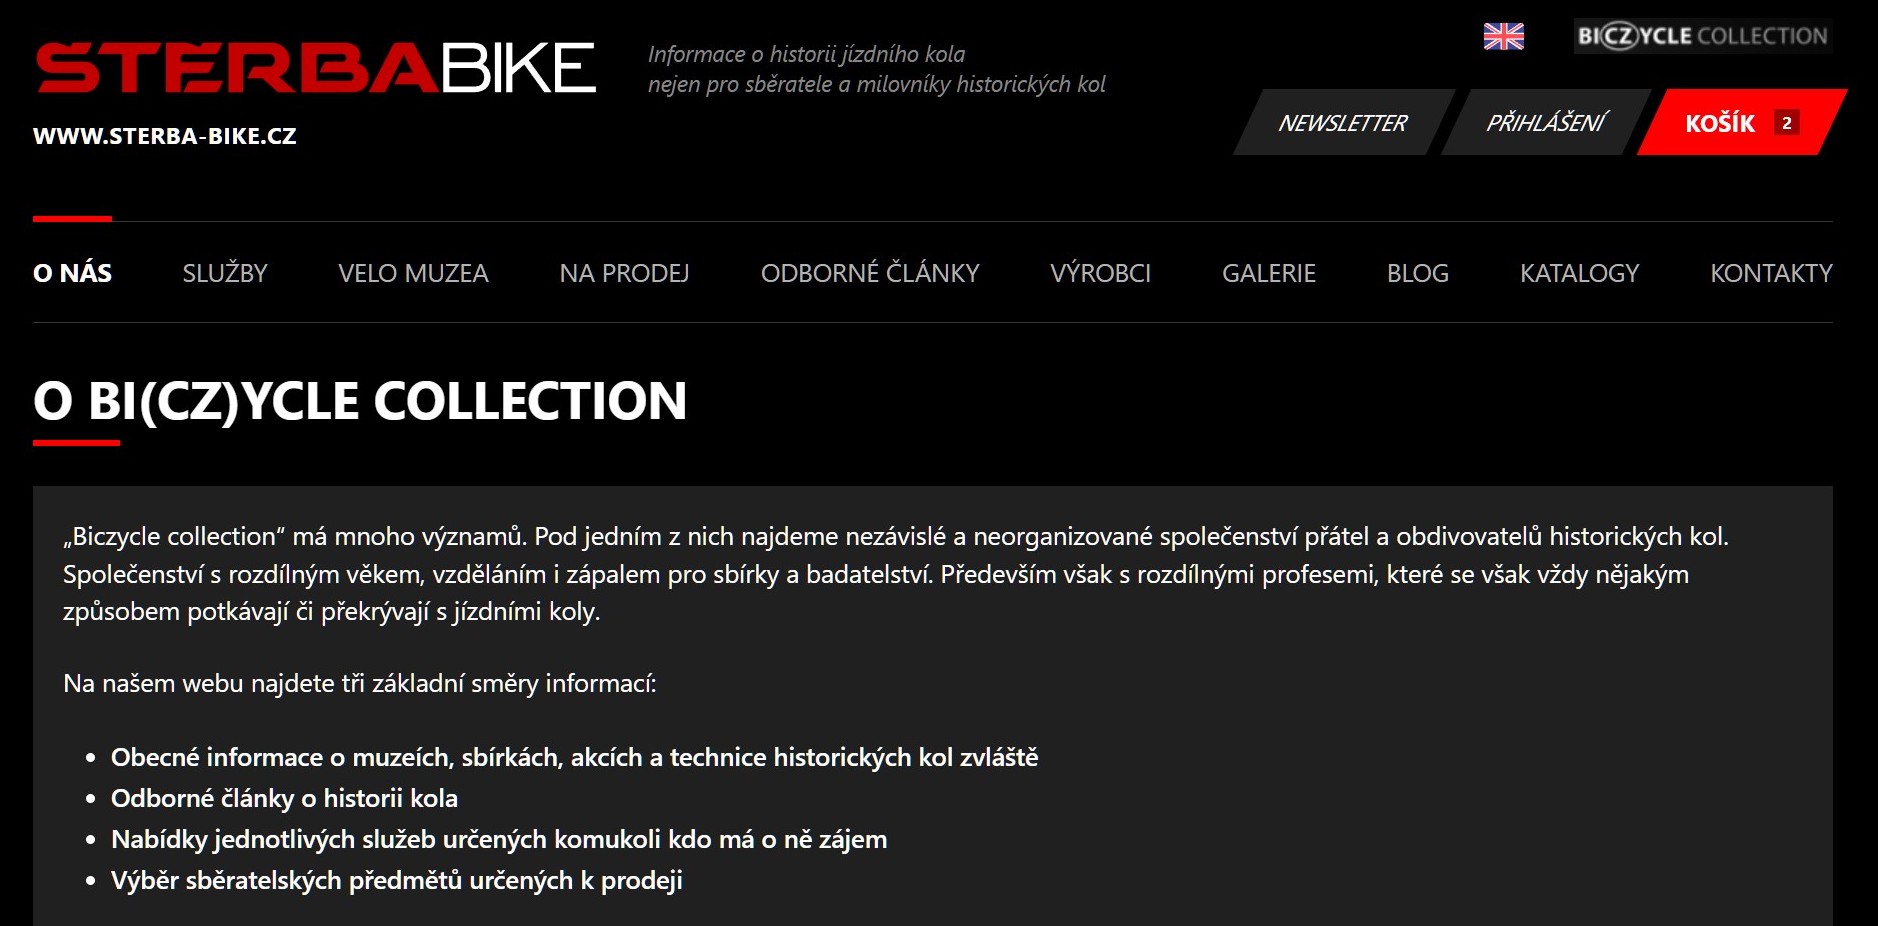 www.sterba-bike.cz